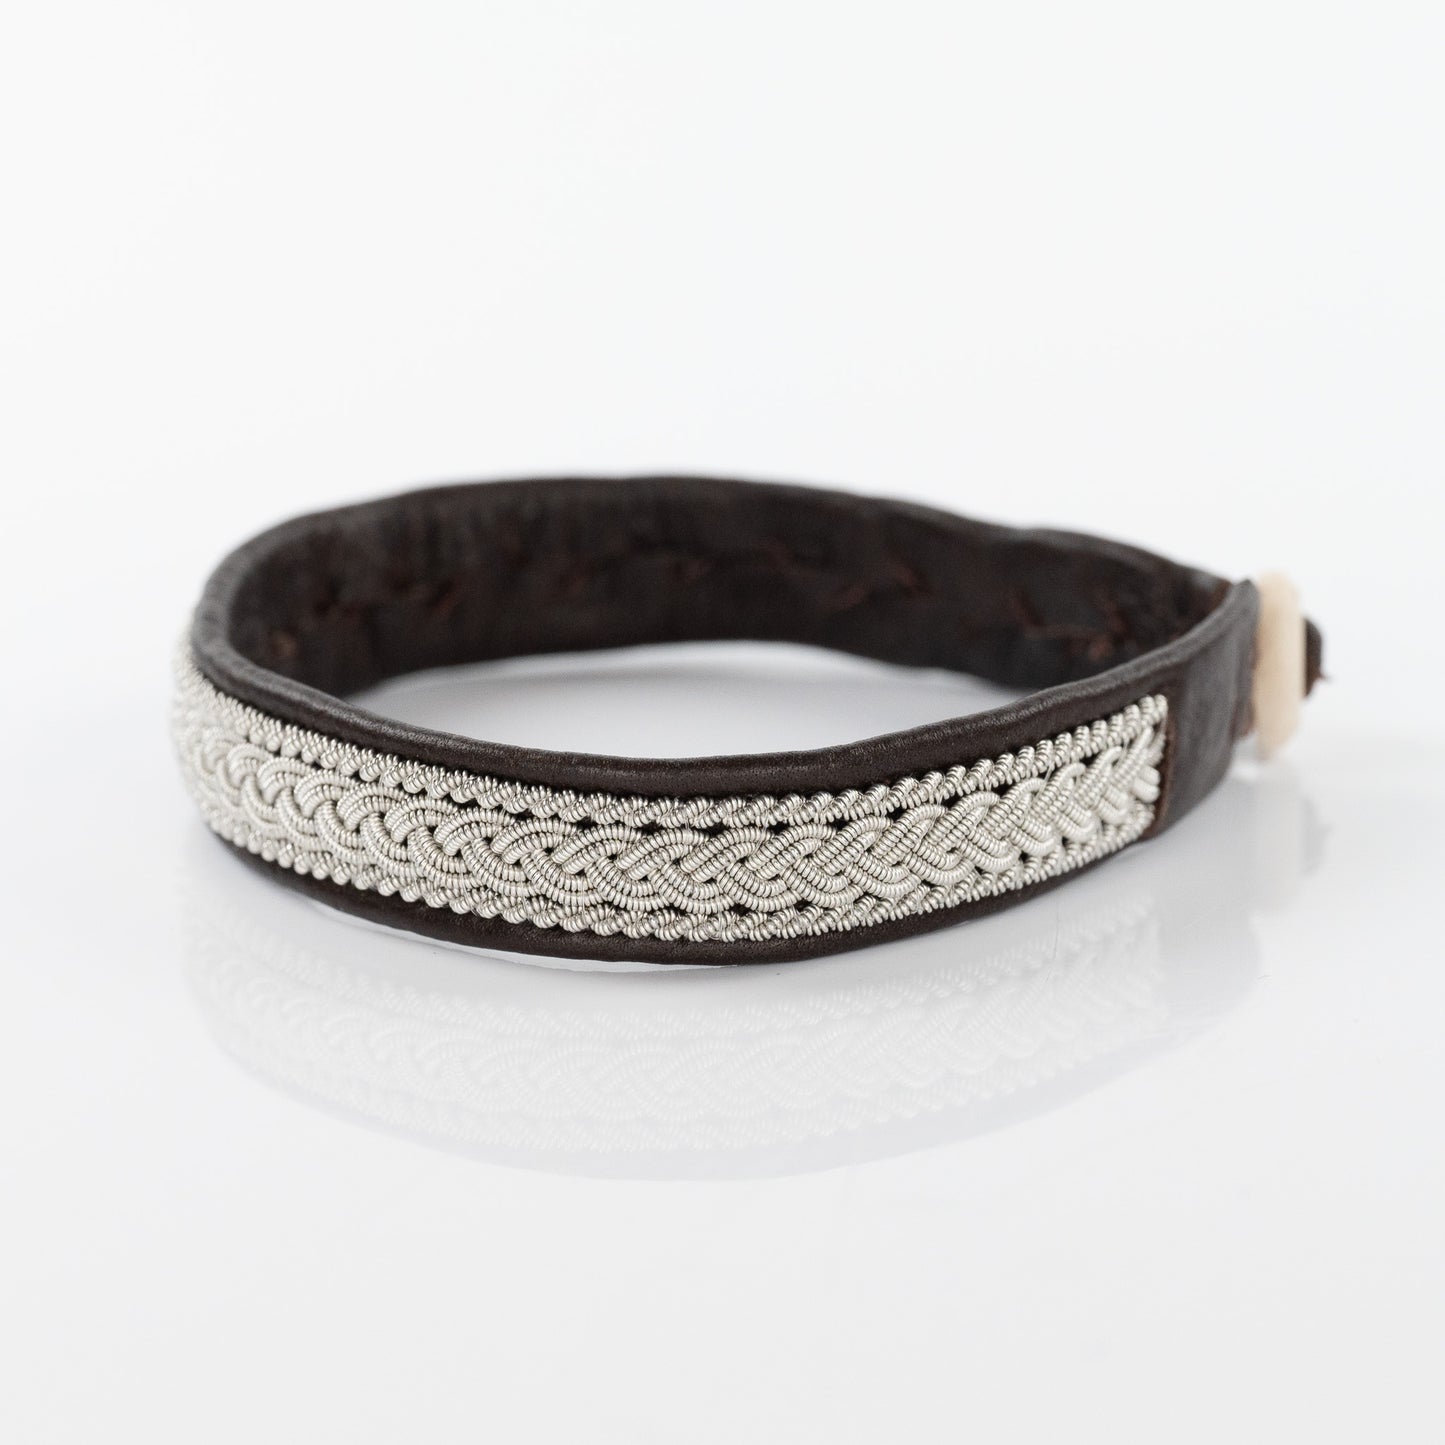 Corfu Double Strand Braid Khaki Bracelet with Twist Boarder